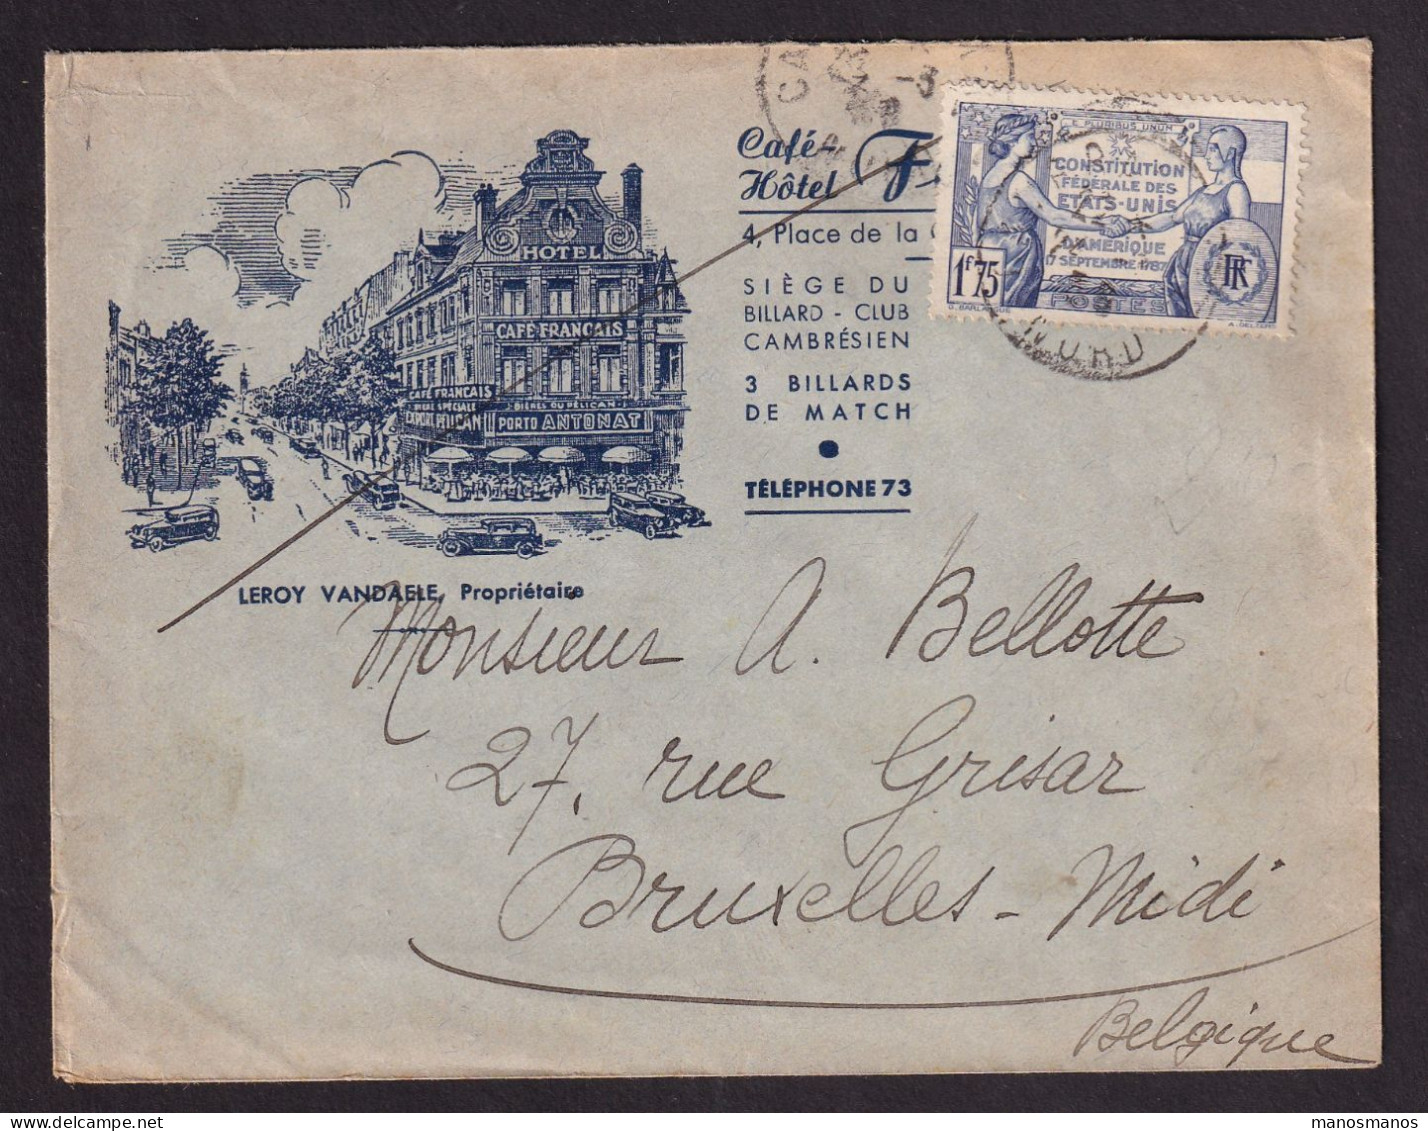 DDGG 039 - Enveloppe Illustrée "Hotel Français" TP 357 CAMBRAY 1938 Vers Bruxelles - Lettres & Documents